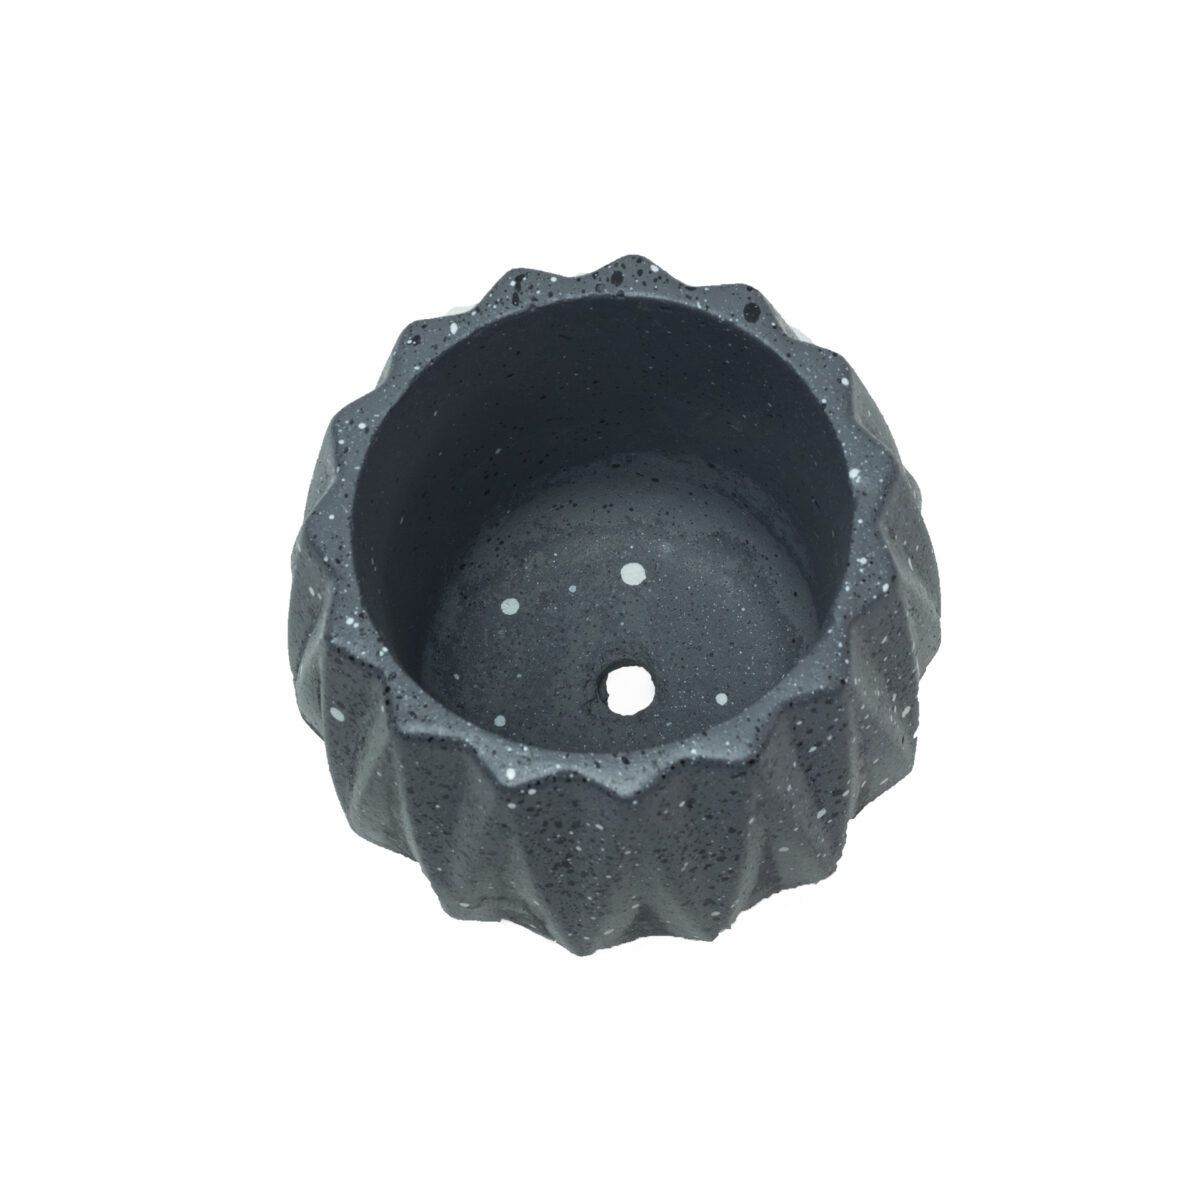 Charcoal Dholki cement Concrete Pot